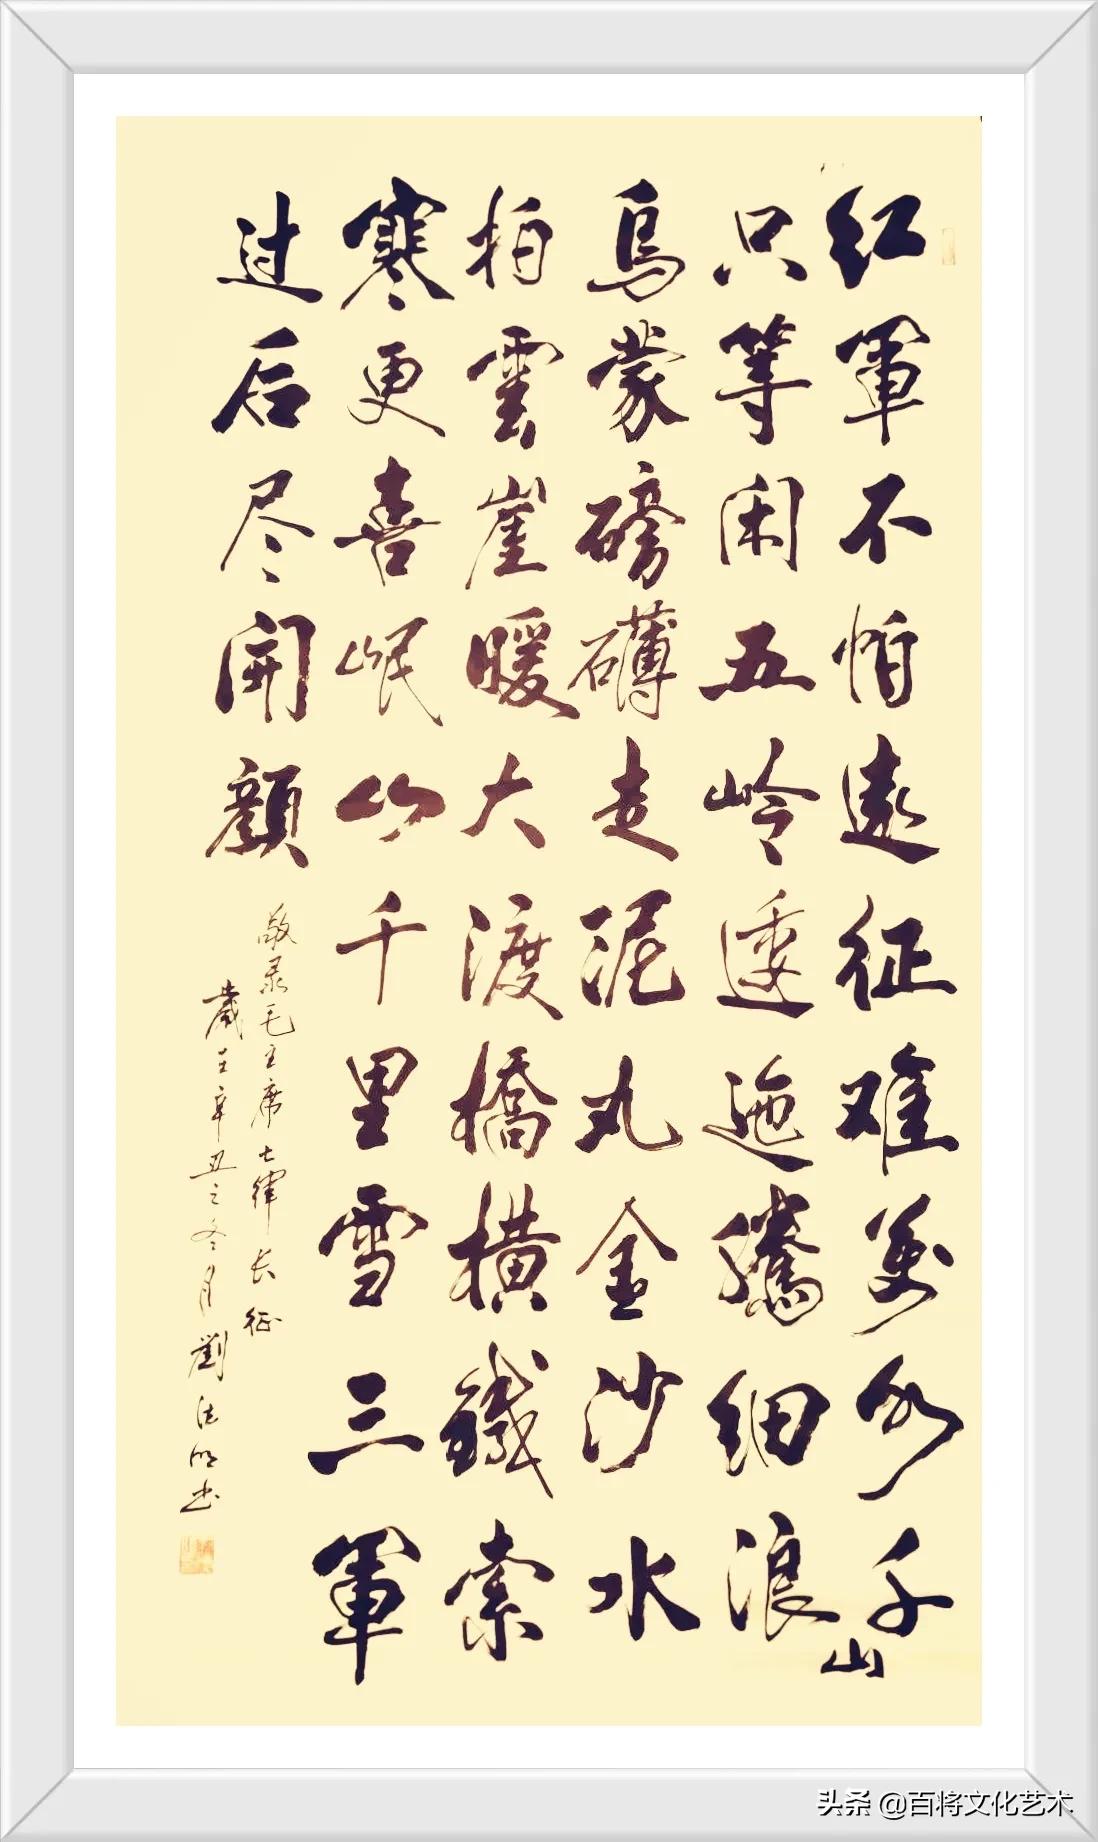 「百将文化」书法 | 12月26日纪念伟大领袖毛主席诞辰128周年